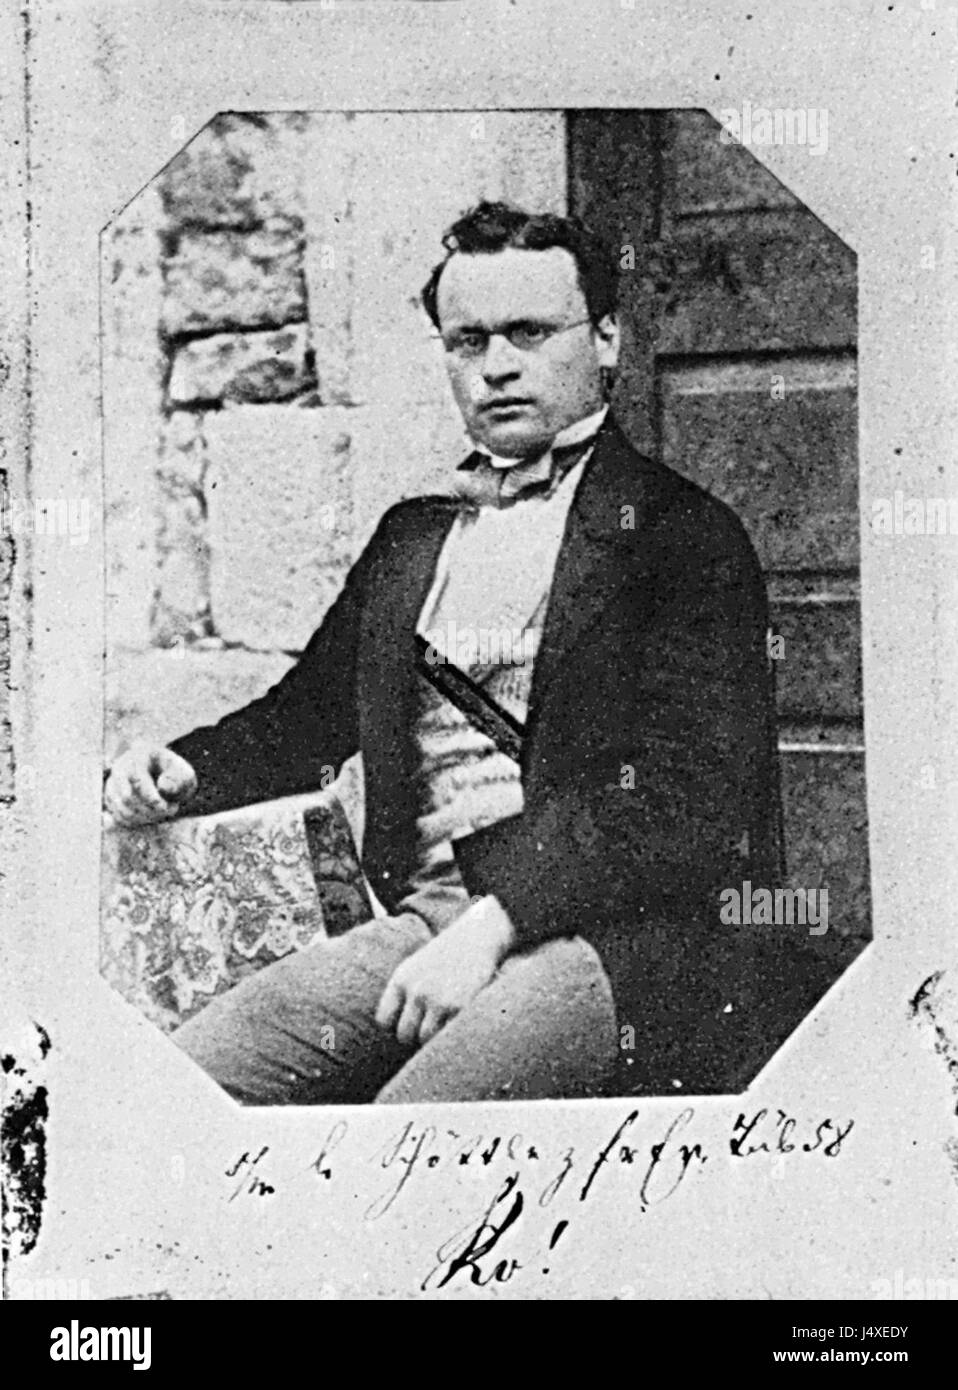 Unbekannter Fotograf Wieland Hopf Salzpapierabzug um 1858 Foto Stock